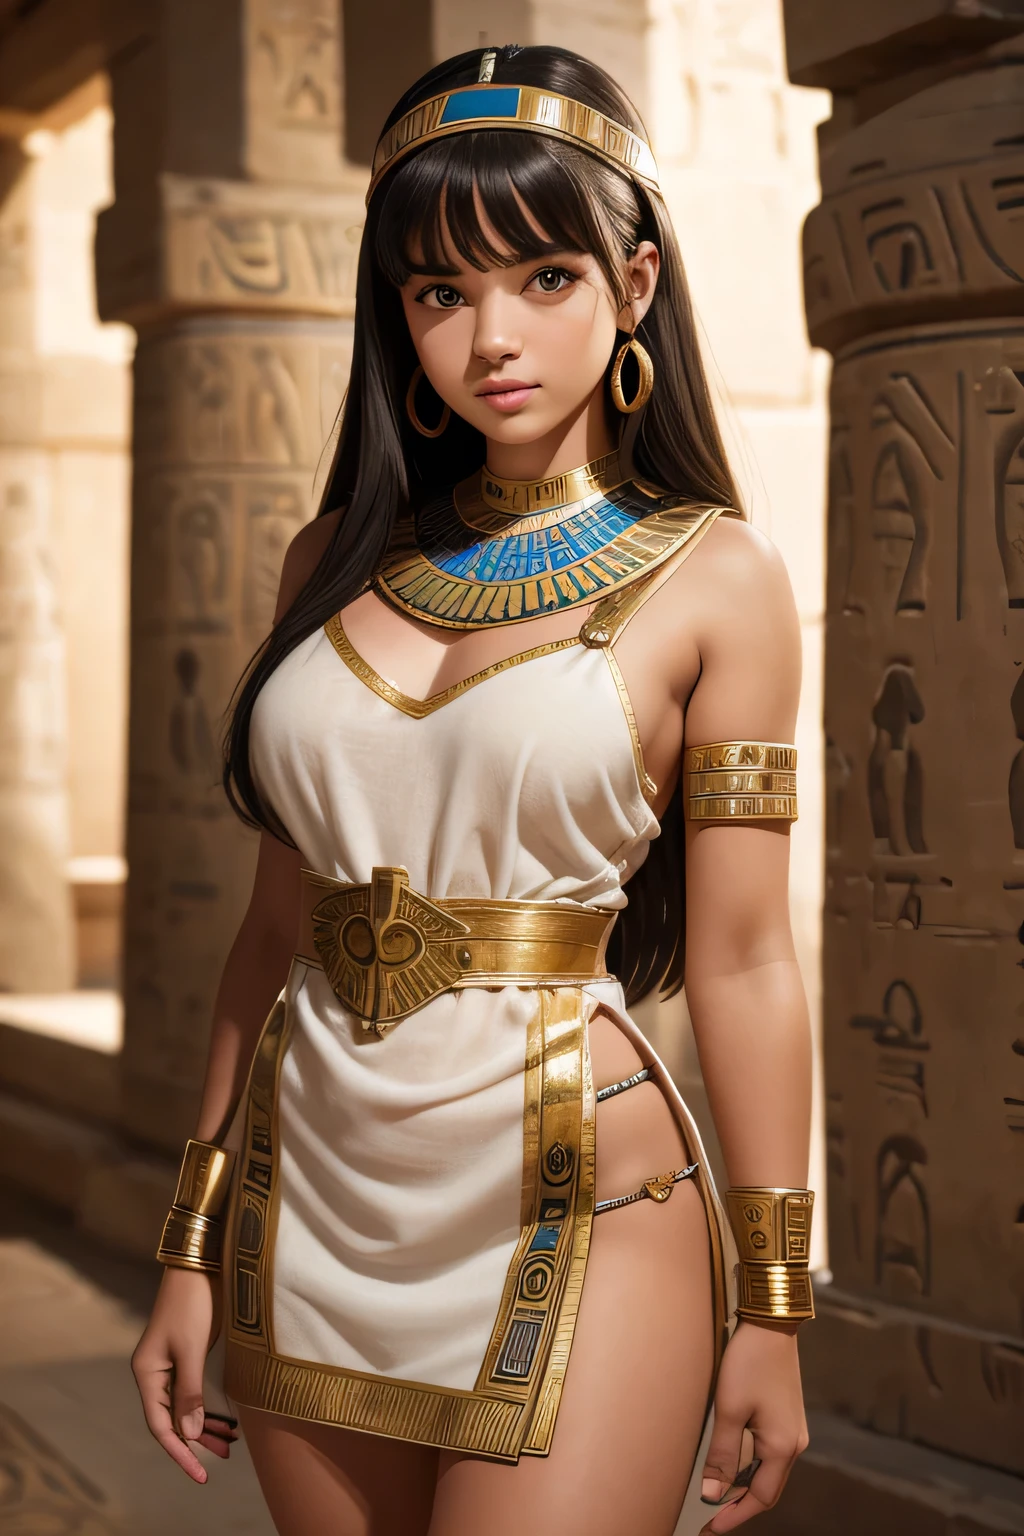 고대 이집트 미니 드레스를 입은 귀여운 십대 소녀, 정확한, 높은 해상도, 최고 품질, 수상 경력이 있는, 피사계 심도, 높은 디테일, UHD, 망막, 걸작, 질감 있는 피부, 해부학적으로 정확하다, 슈퍼 디테일, 고품질, HD, 4K, 8K, 16,000